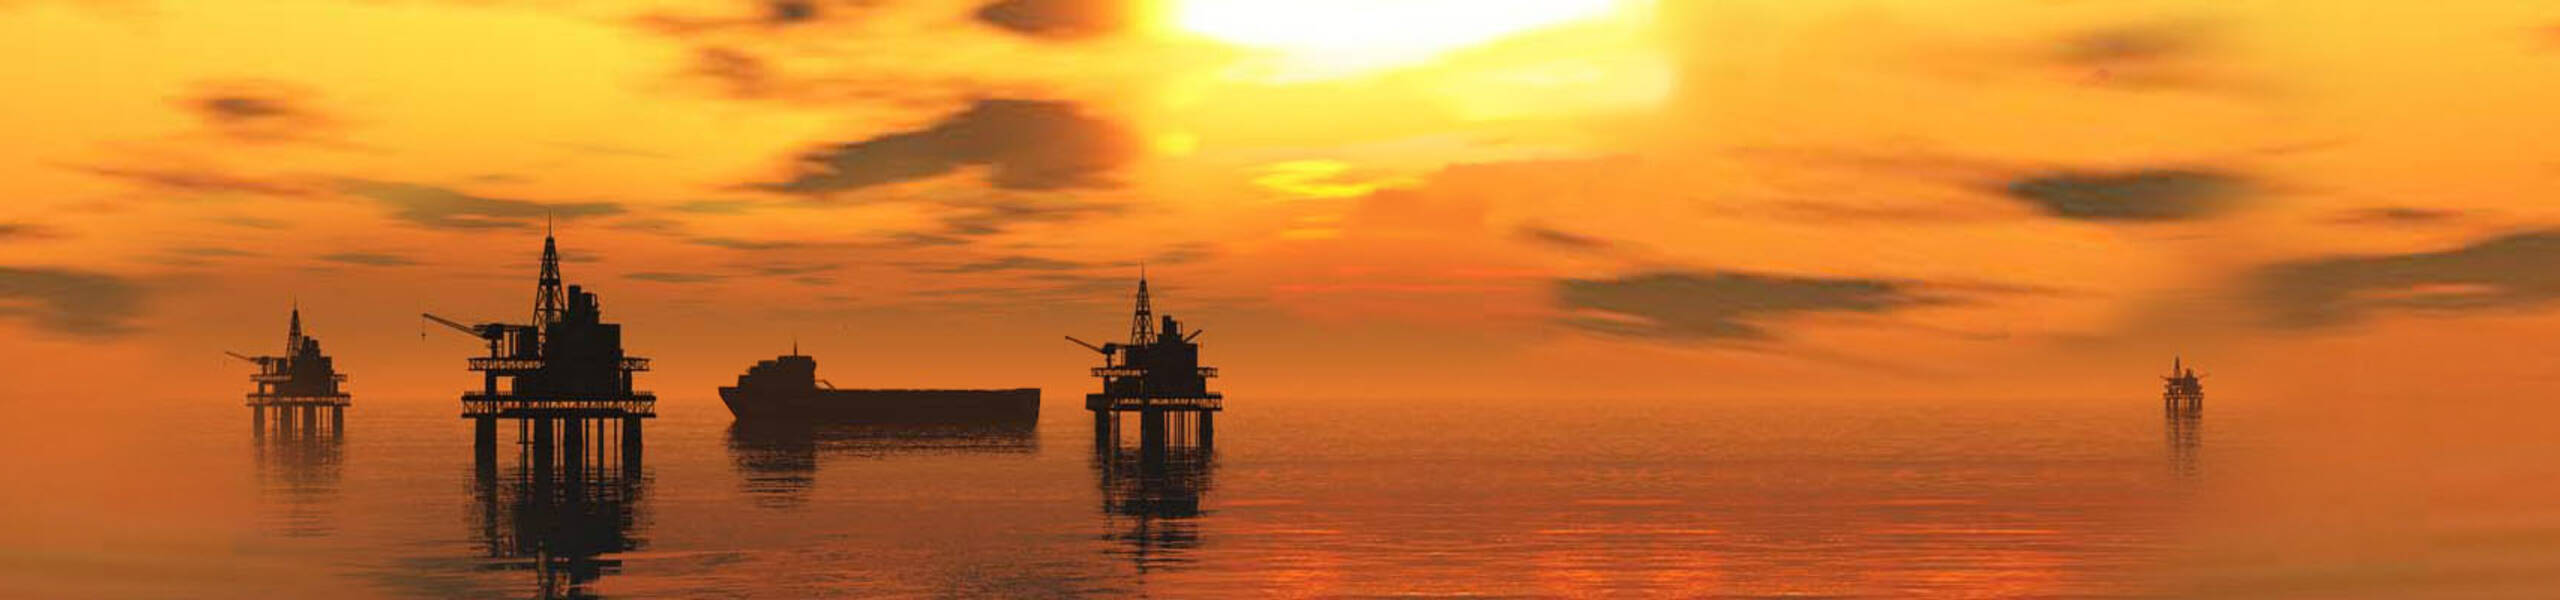 Preços do petróleo ligeiramente mais baixo antes da decisão da OPEP